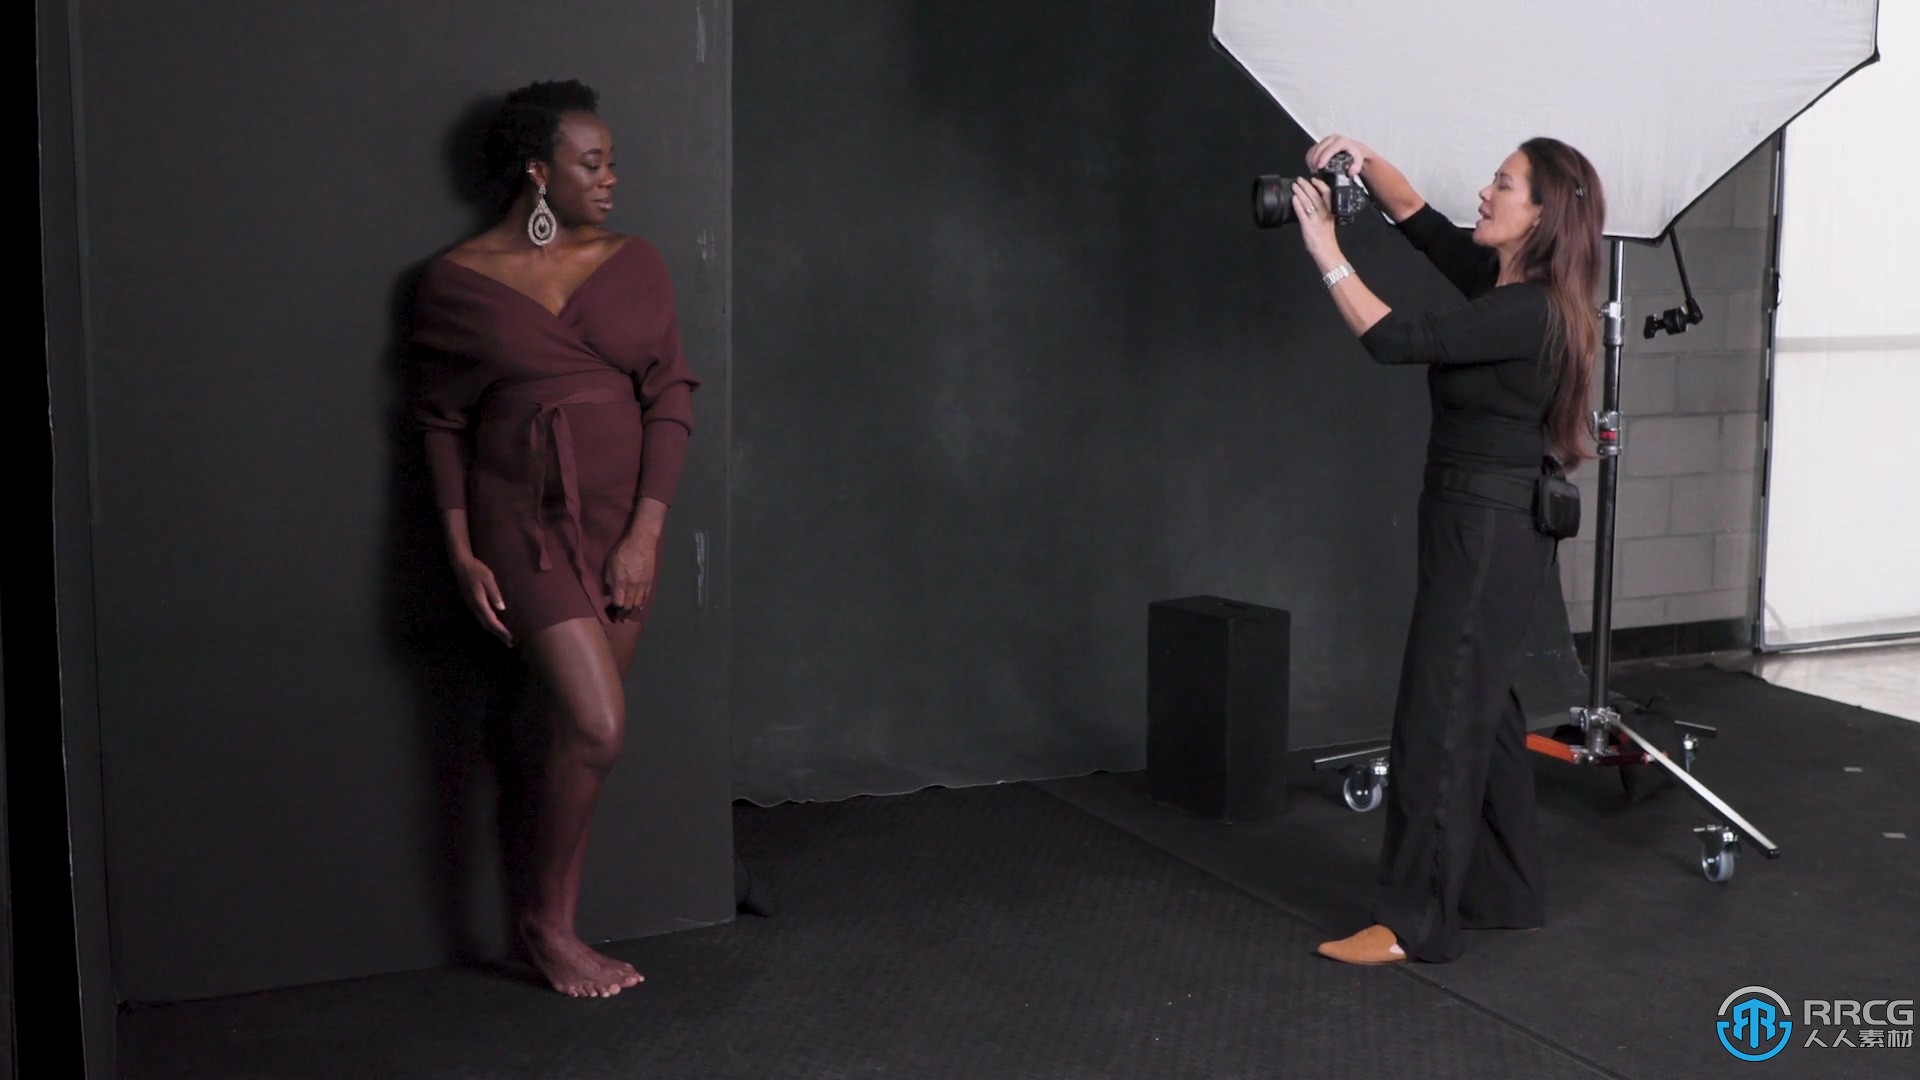 Sue bryce肖像大师系列摄影教程之姿势造型视频教程